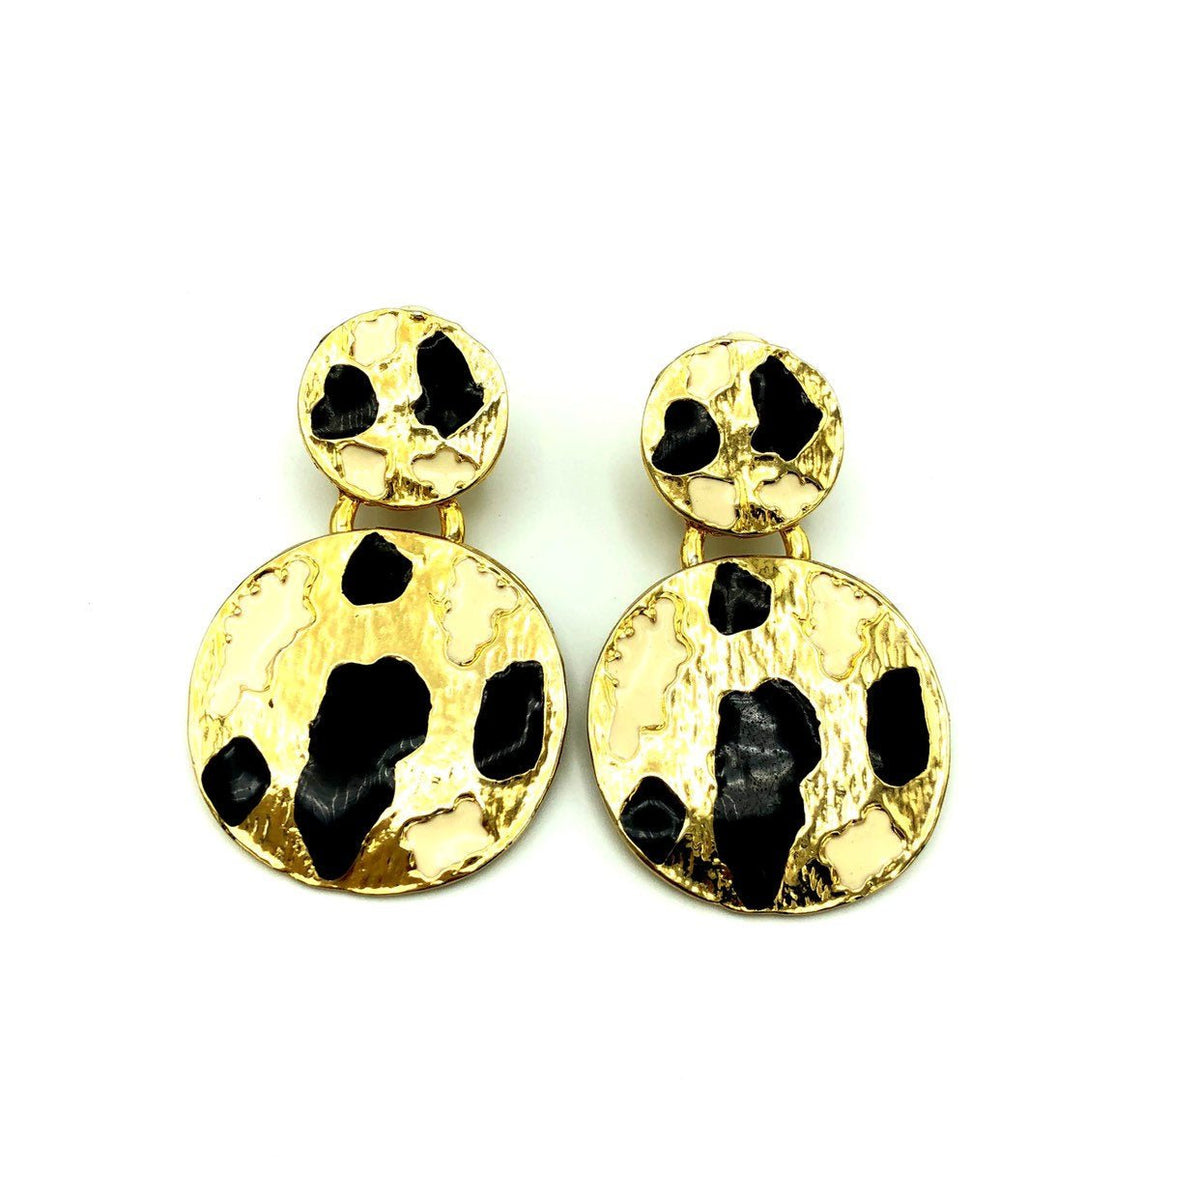 Vintage KOKO Black Enamel Animal Print Gold Clip-On Earrings - 24 Wishes Vintage Jewelry